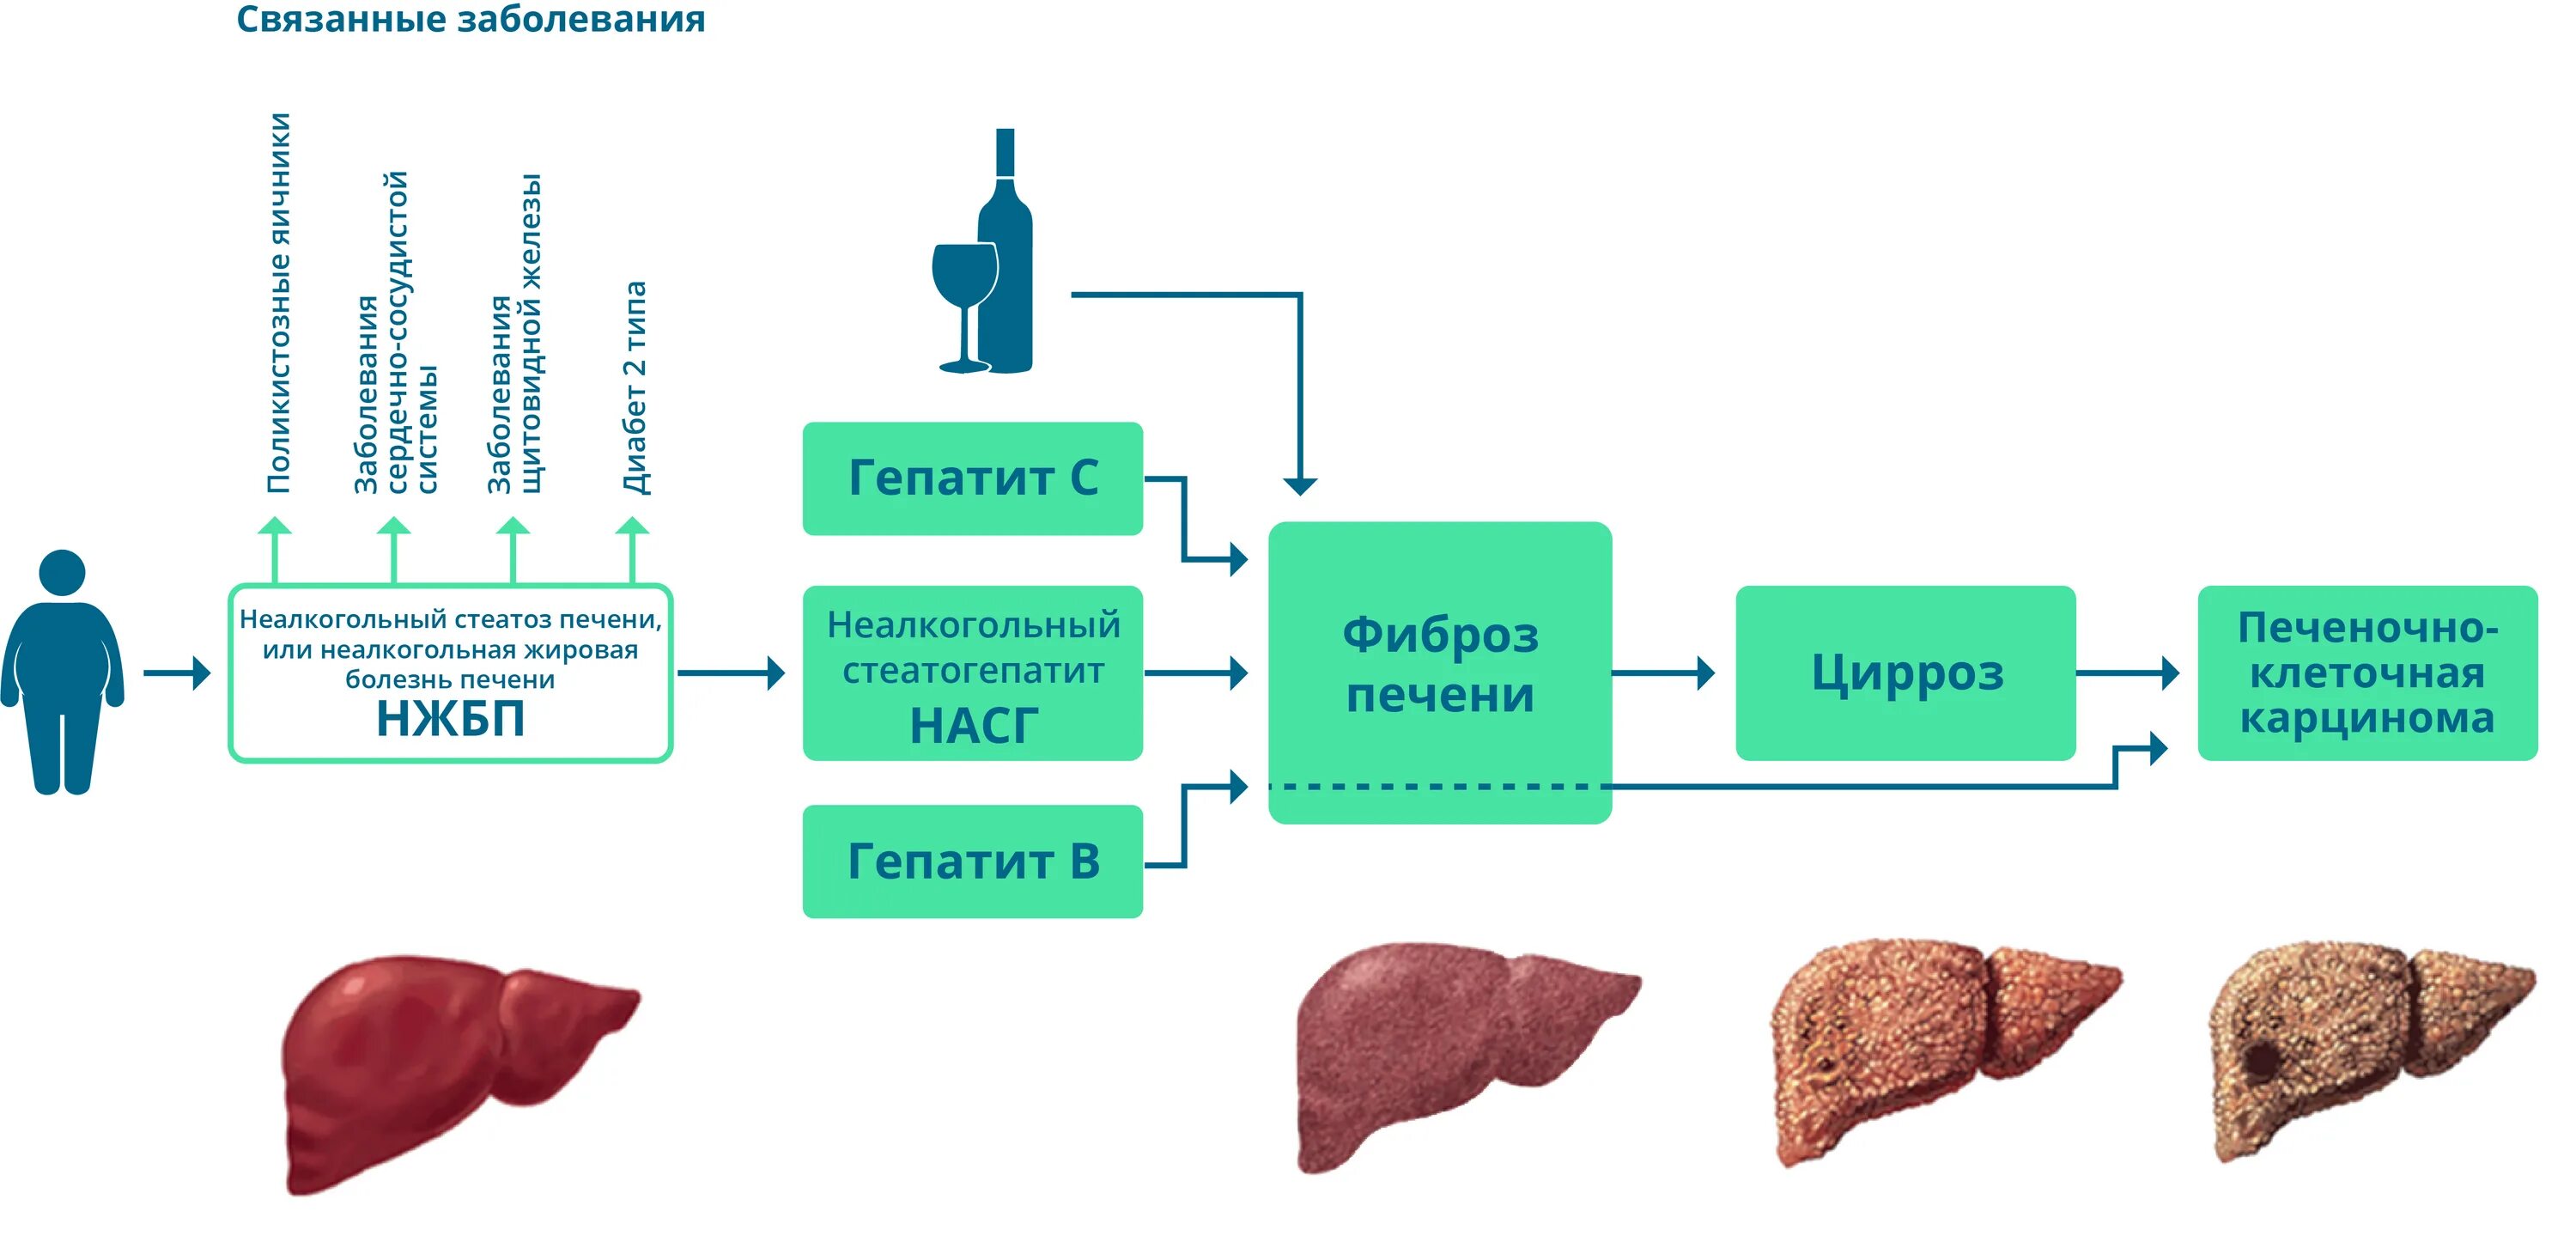 Признаки стеатоза печени. Схема лекарств при стеатозе печени. Стадии стеатоза печени. Болезнь печени стеатогепатоз.